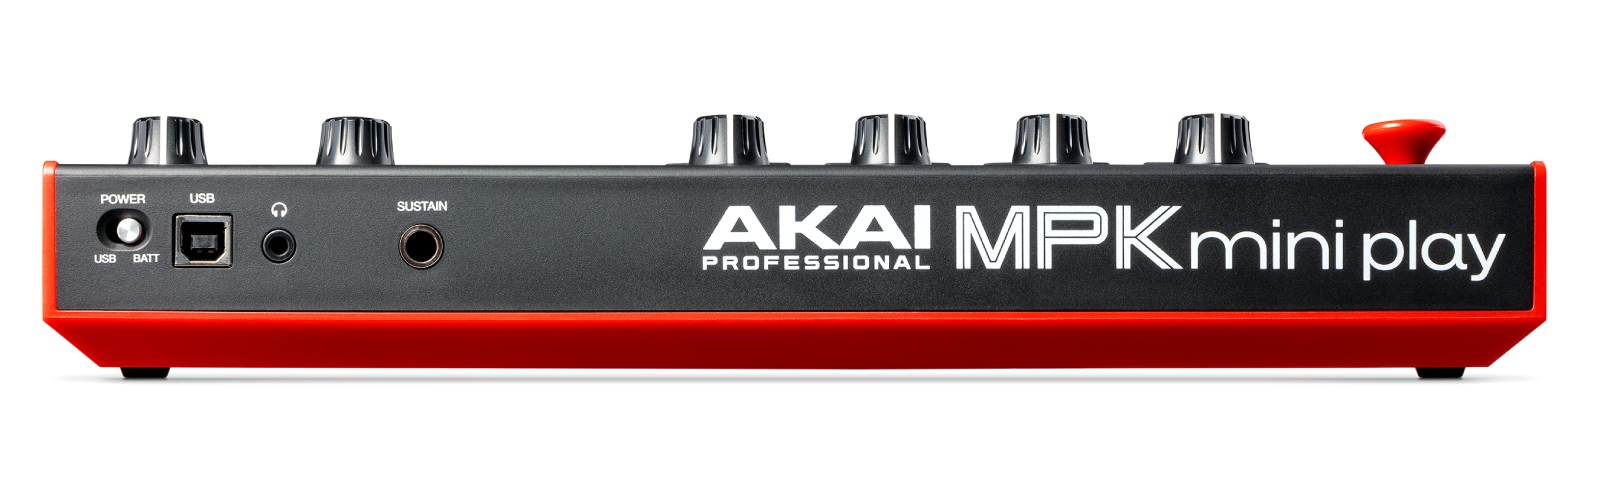 Akai MPK Mini Play Mk3 Keyboard MIDI USB Controller with built-in